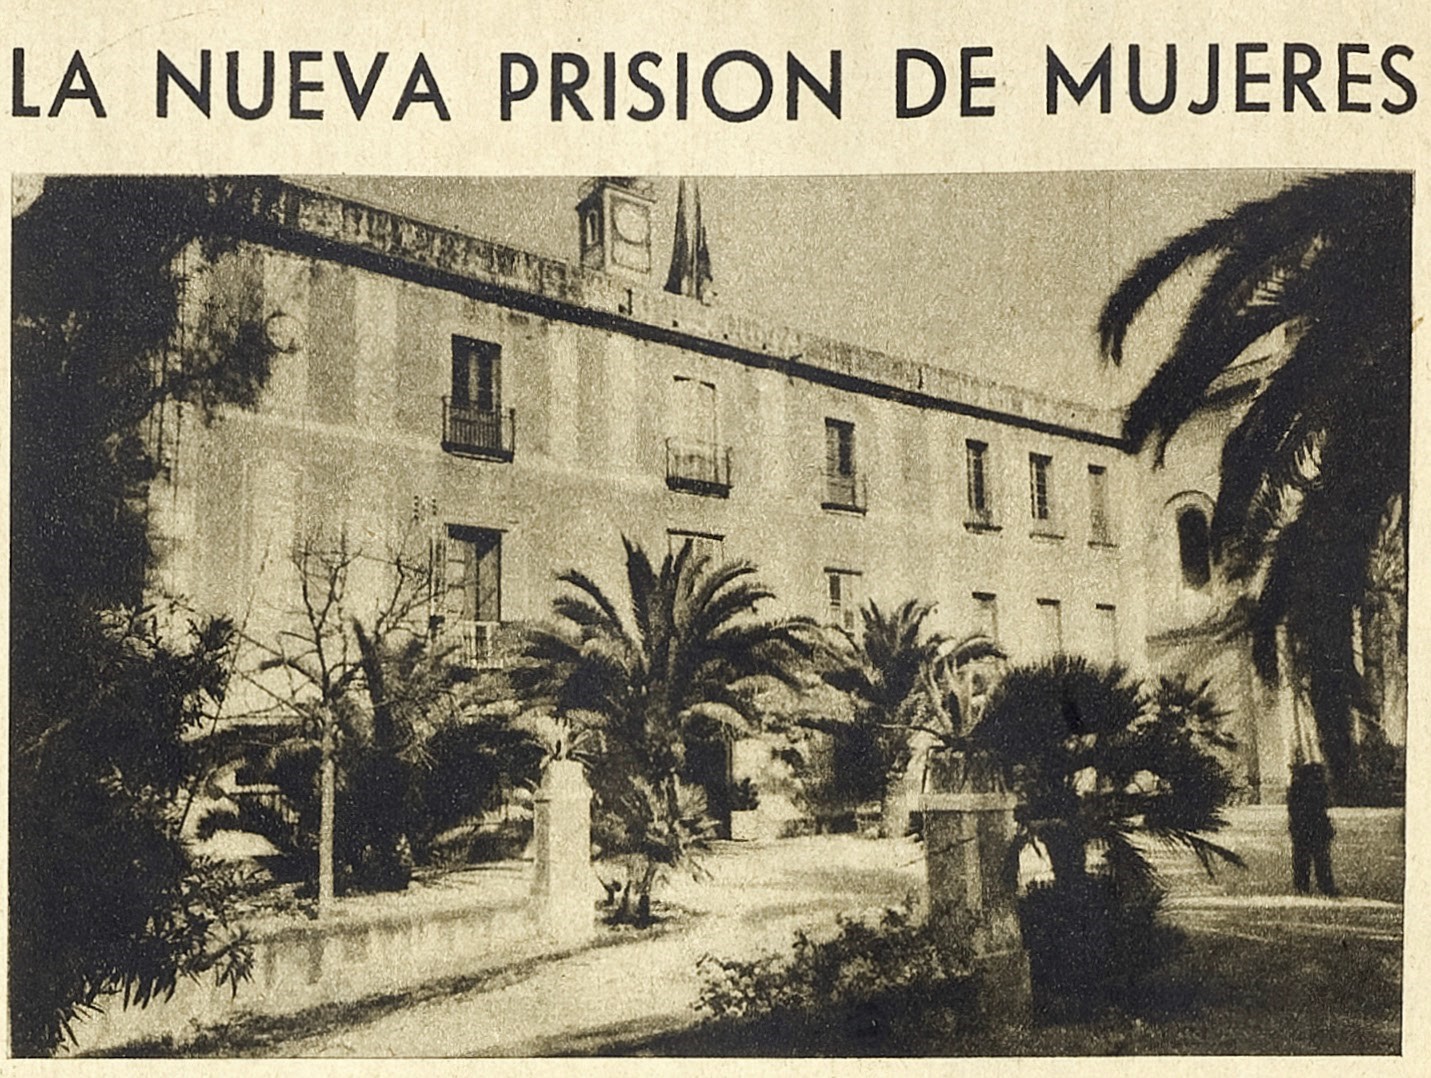 La Vanguardia, 13-3-1937